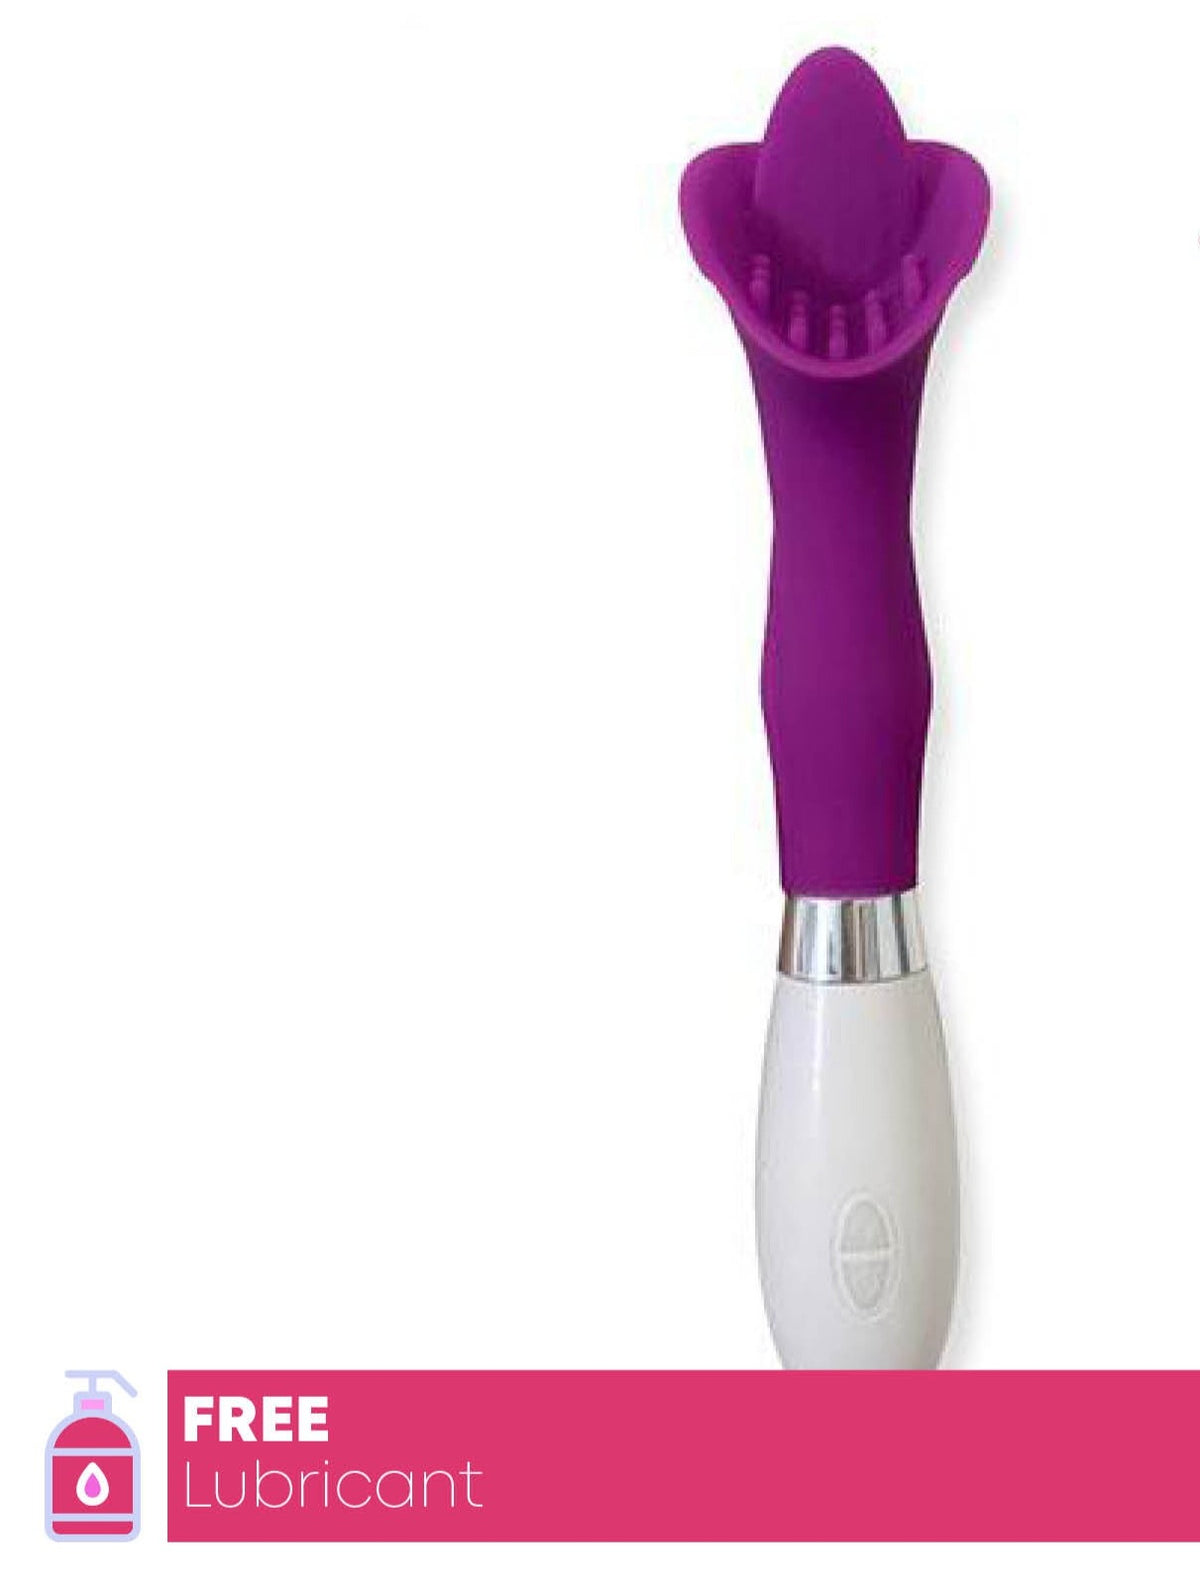 Tongue Vibrator 30 Mode Silicone Clitoris Stimulator Vibrator Oral Sex Toy